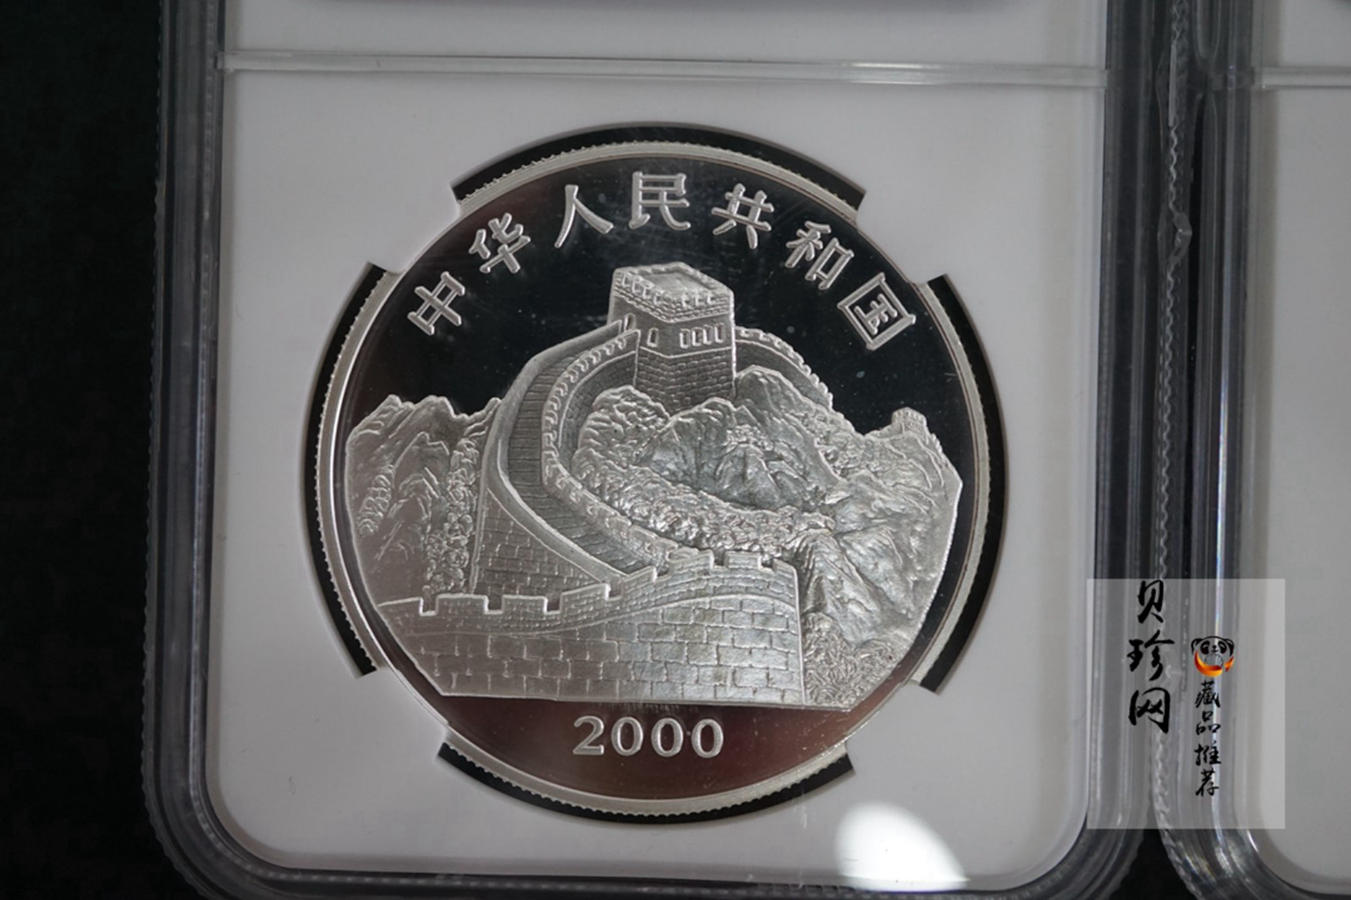 【009070】2000年中国珍禽-戴胜鸟精制彩金银币二枚一套